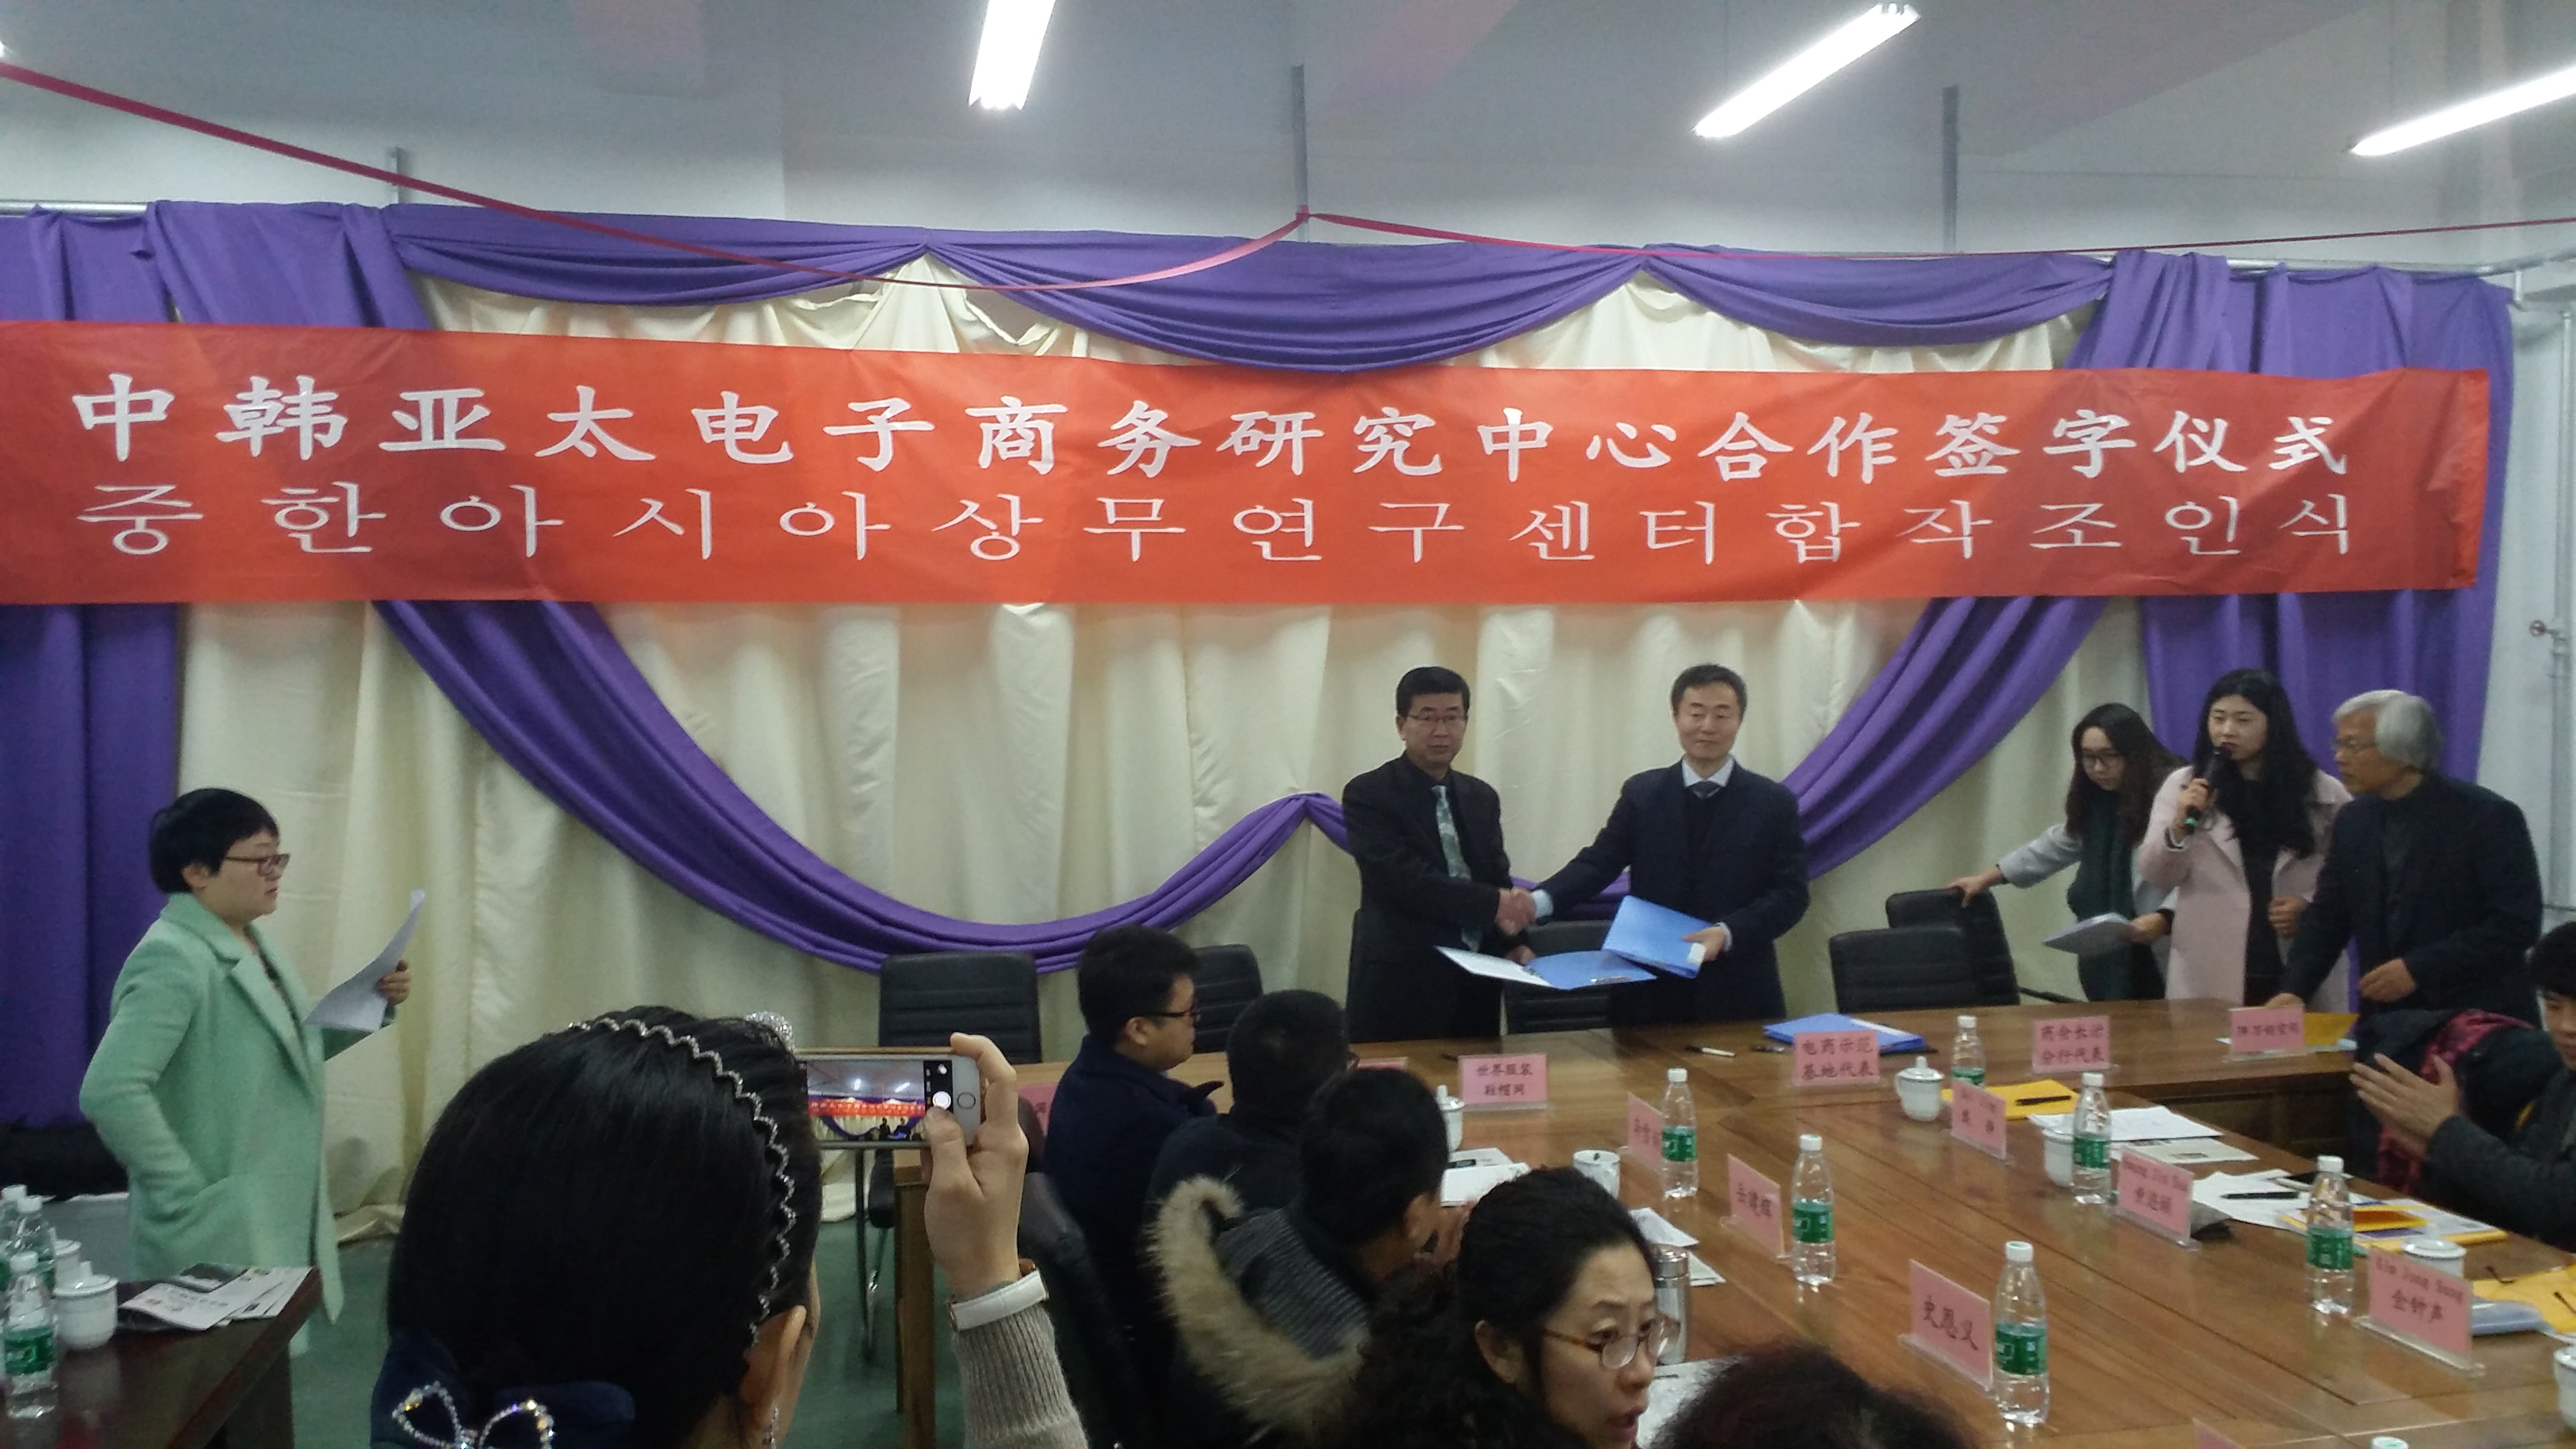 中韓亞太電子商務研究中心合作簽字儀式